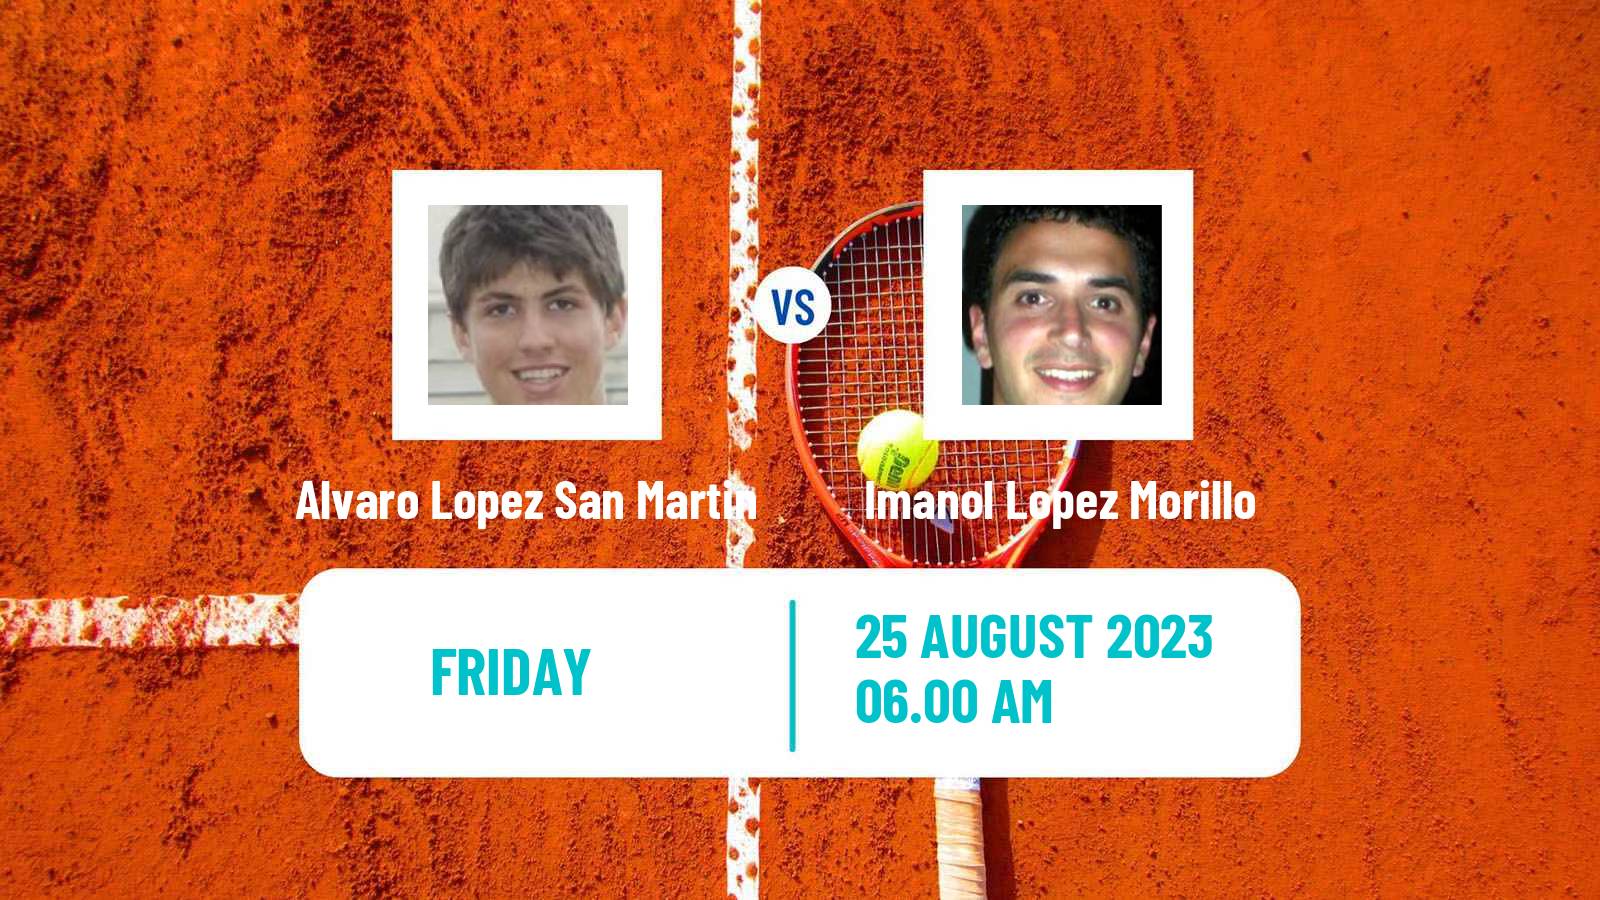 Tennis ITF M25 Santander Men Alvaro Lopez San Martin - Imanol Lopez Morillo